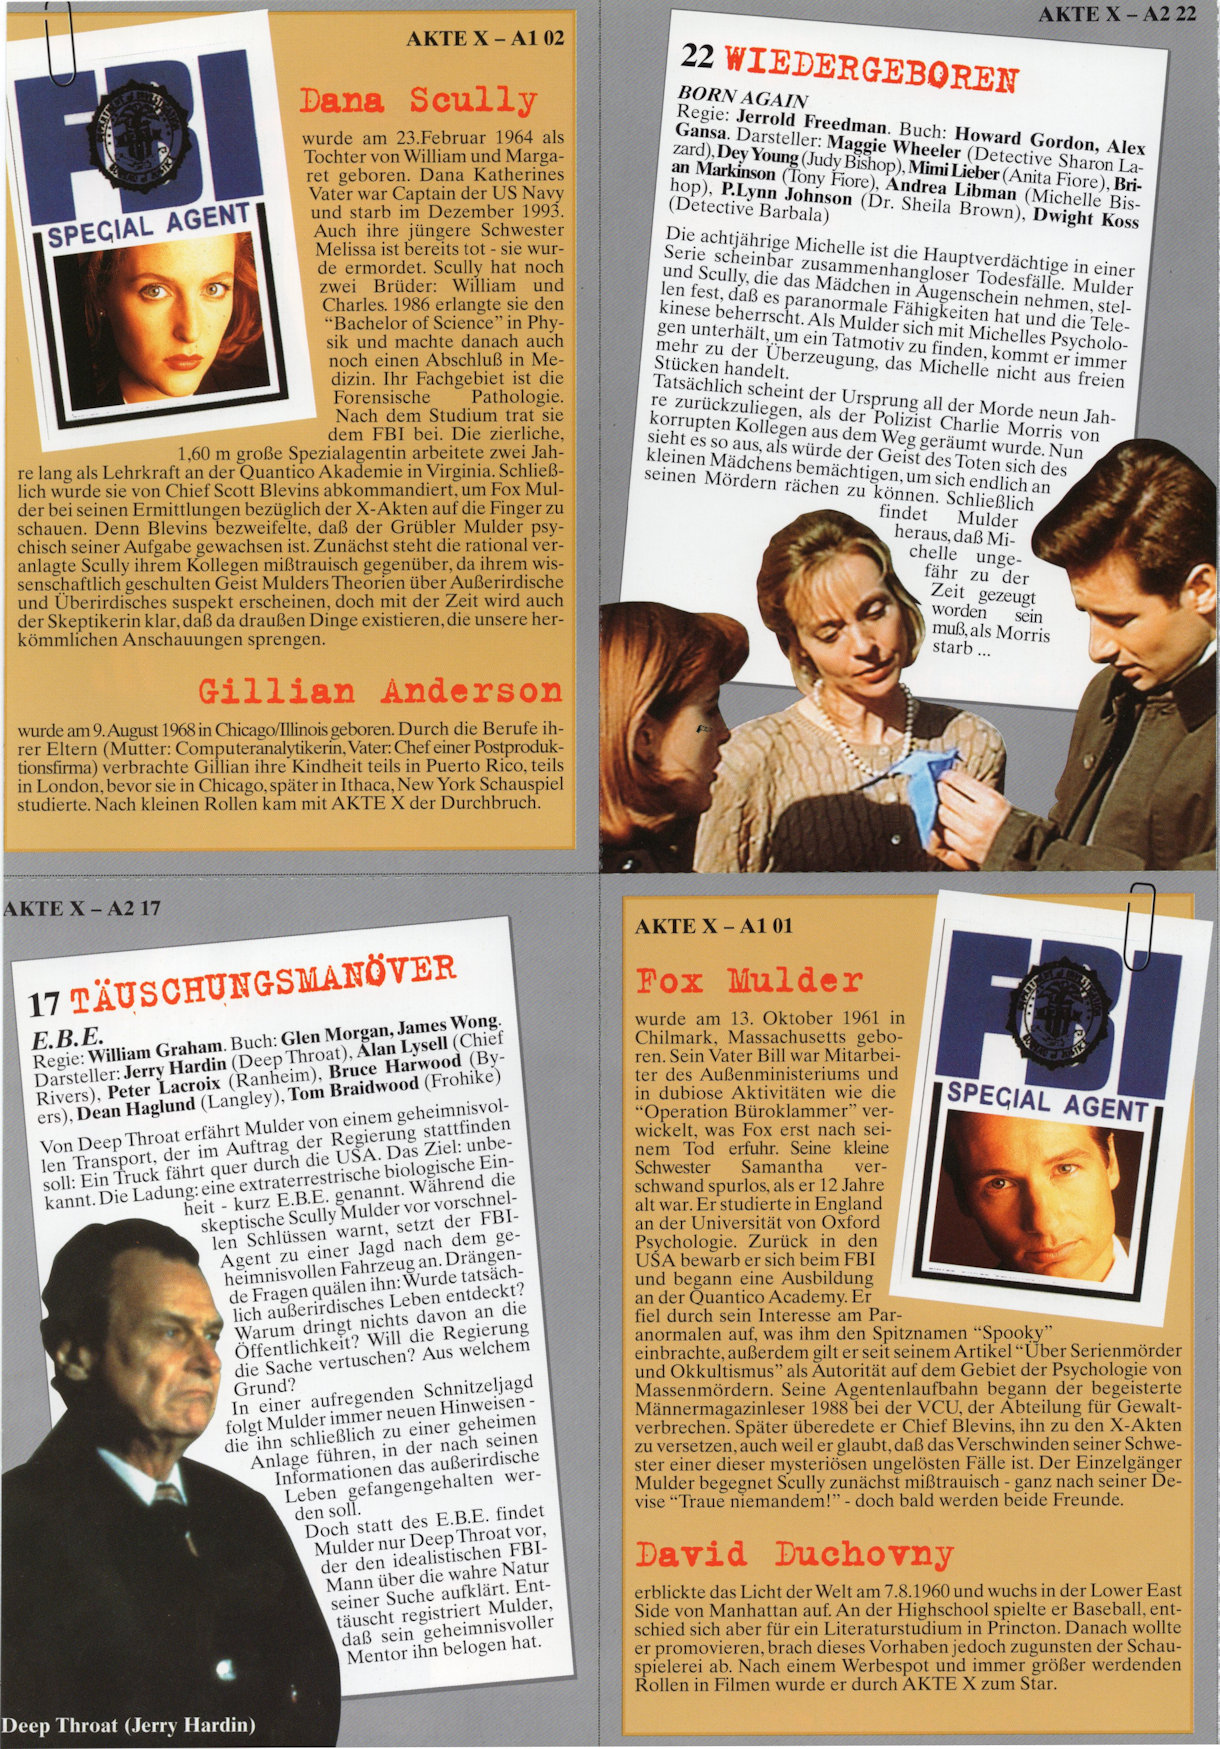 TV Highlights AUG 1997 - Eine Erschreckende Zukunft - Page 14
Keywords: xfiles_media